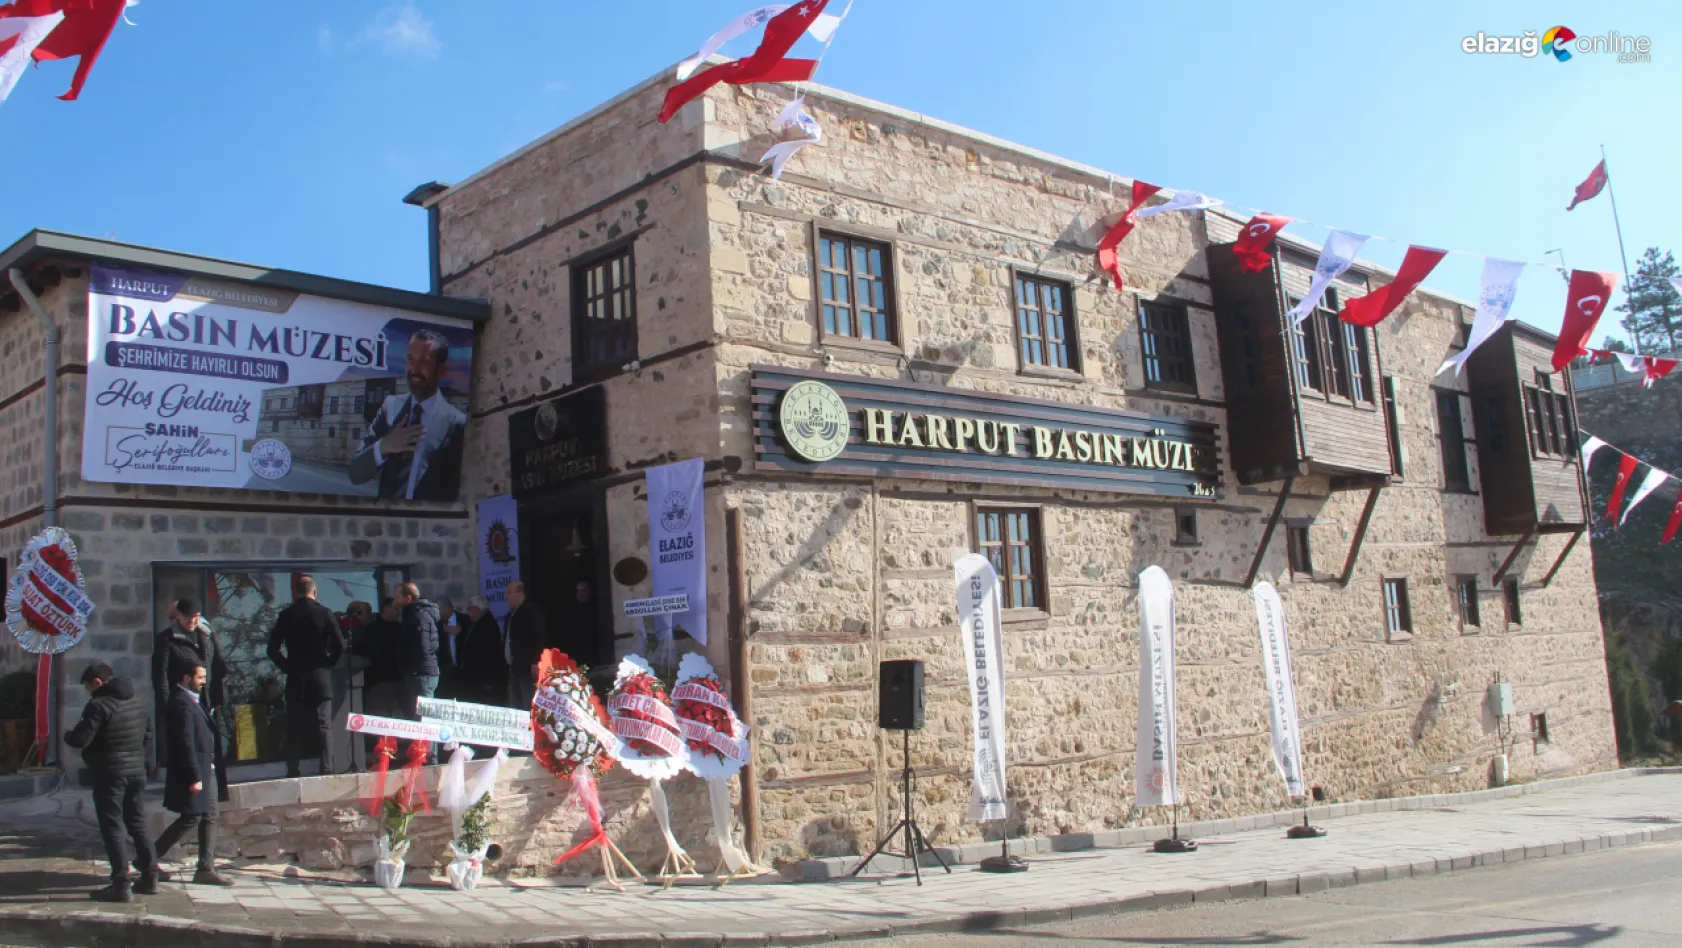 Elazığ Basın Müzesi, 10 Ocak Çalışan Gazeteciler Günü'nde hizmete girdi